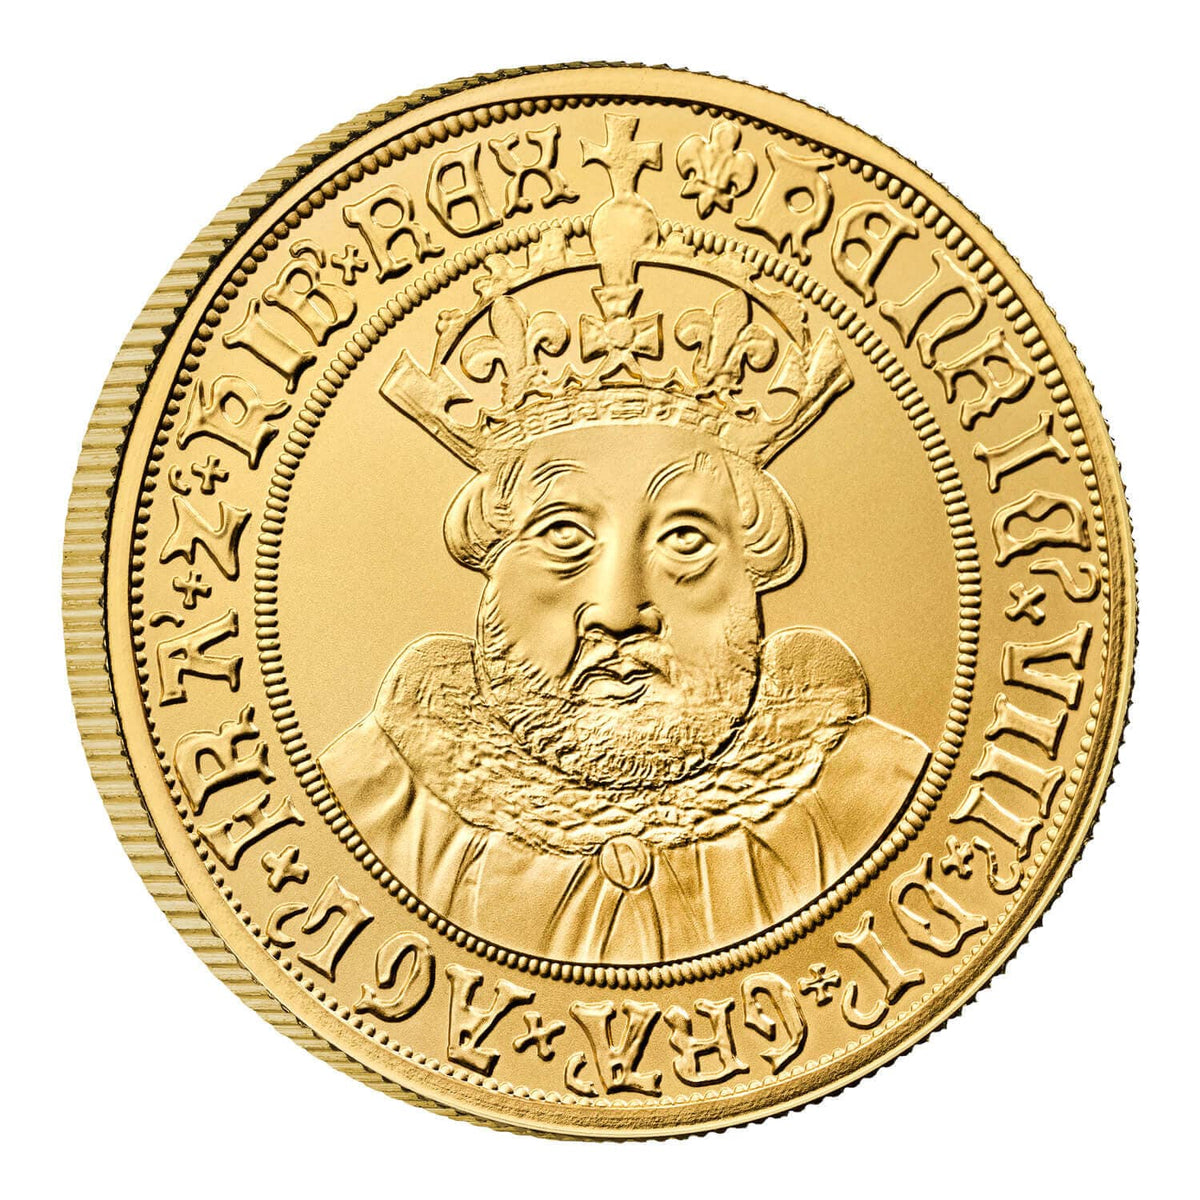 2023 英国君主コレクション ヘンリー8世 1オンス プルーフ金貨【限定100枚】 | アンティークコインギャラリア